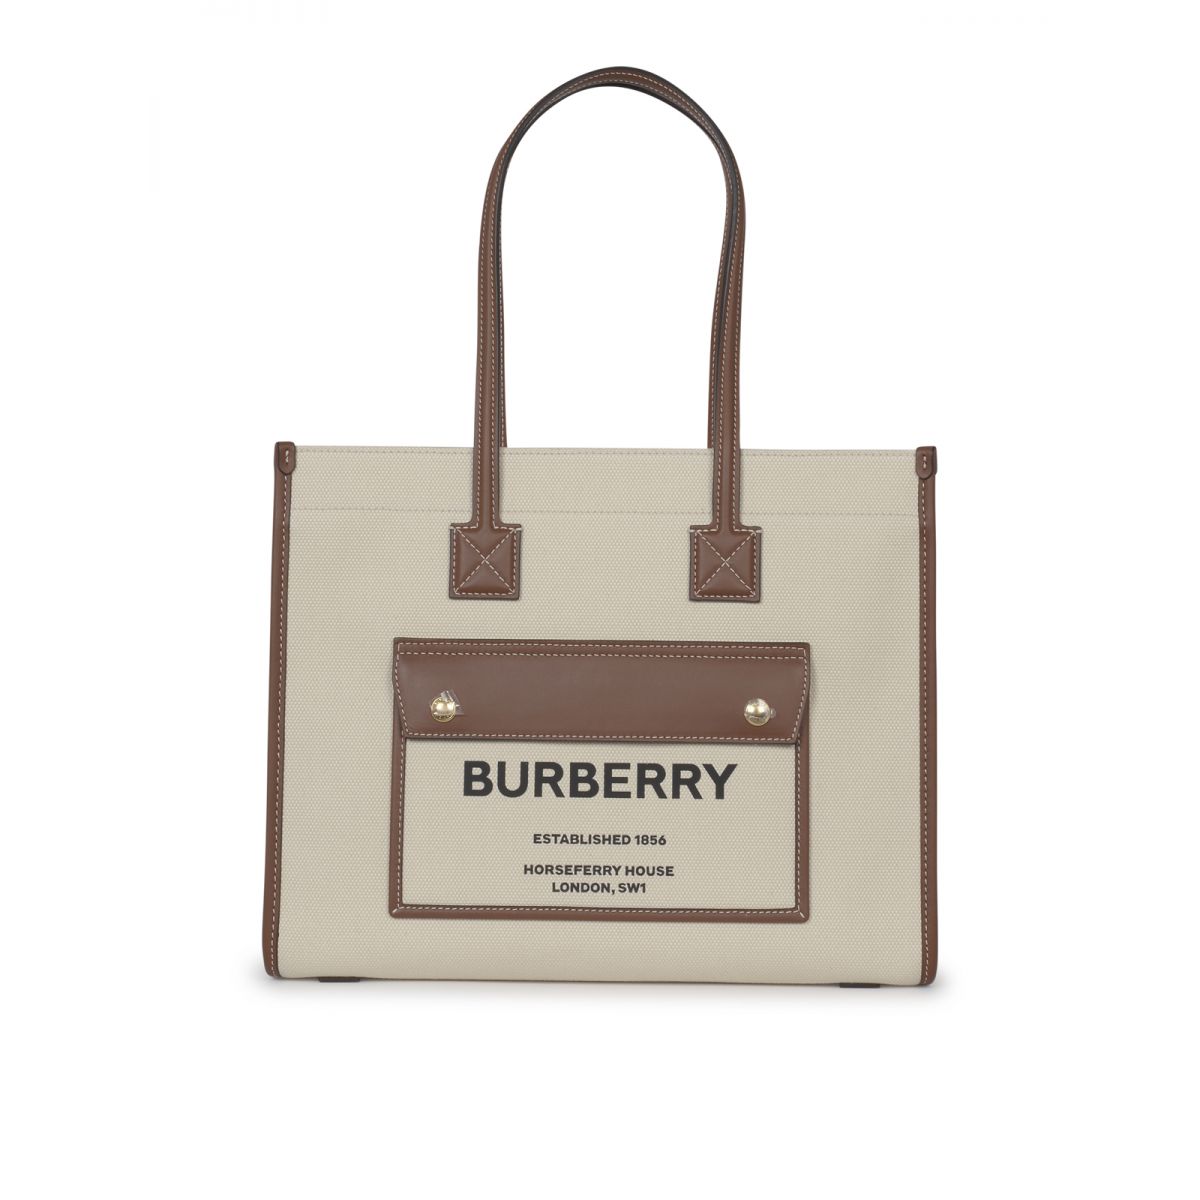 BURBERRY - Small Freya tote bag